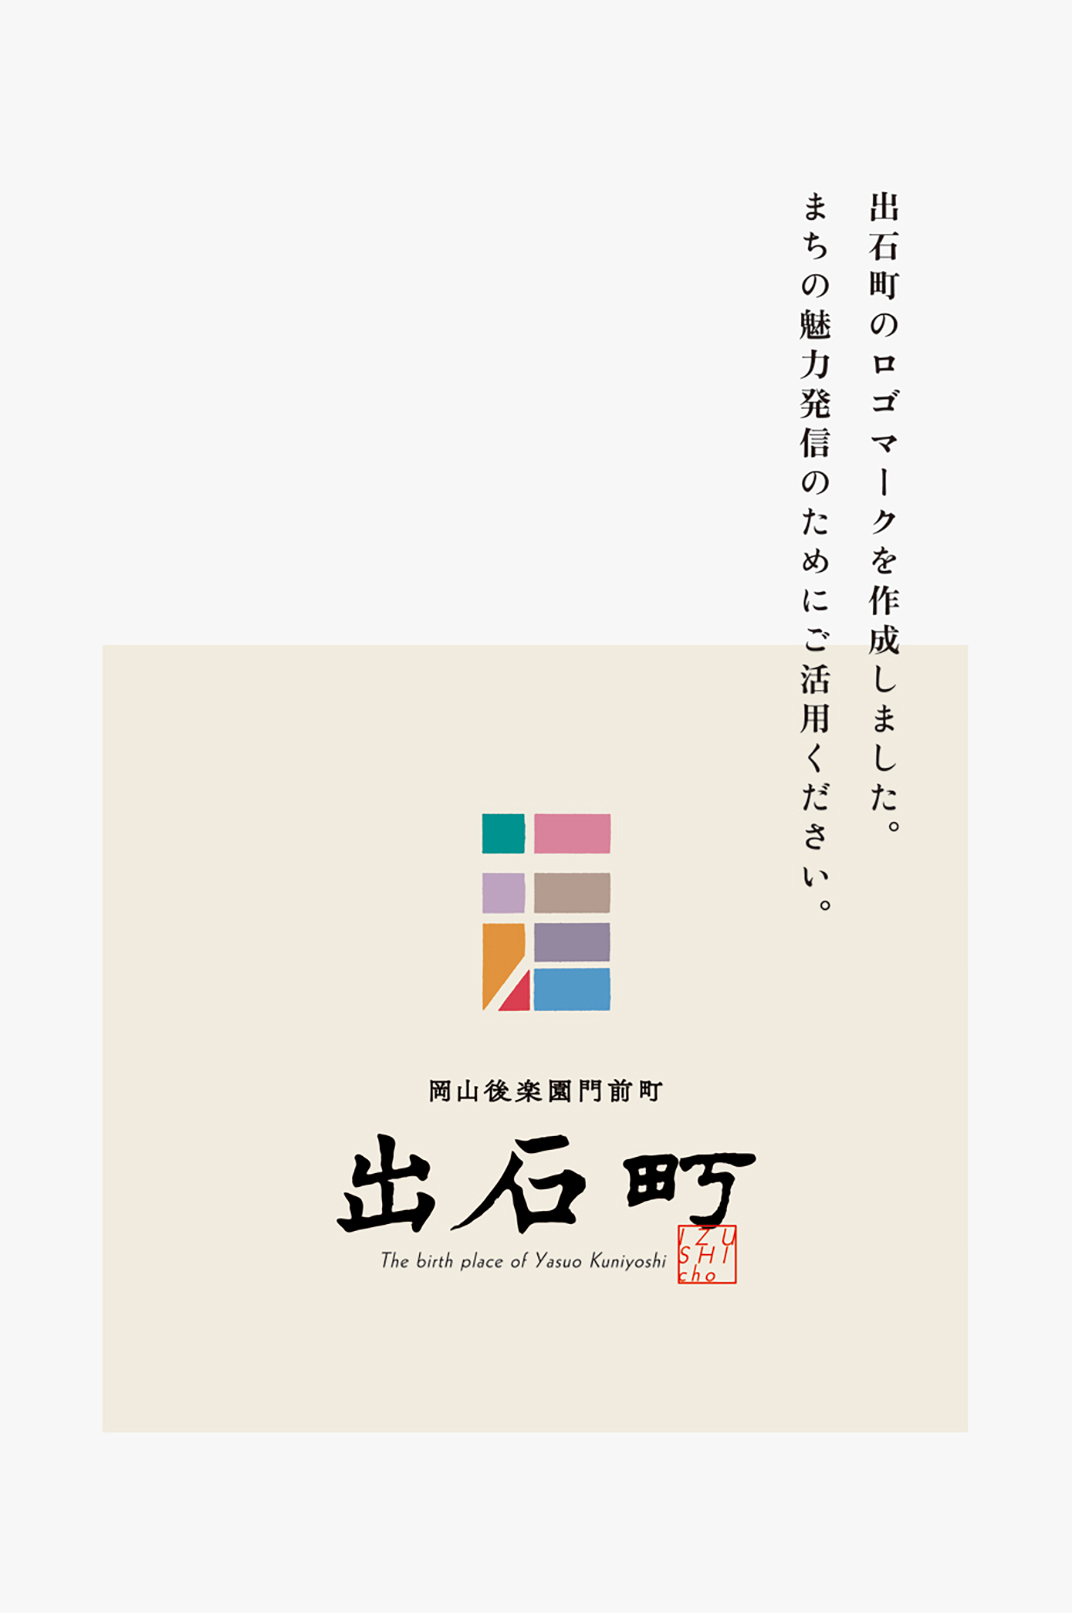 出石町品牌logo设计 日本 北京 上海 珠海 广州 武汉 杭州 佛山 澳门 logo设计 vi设计 空间设计